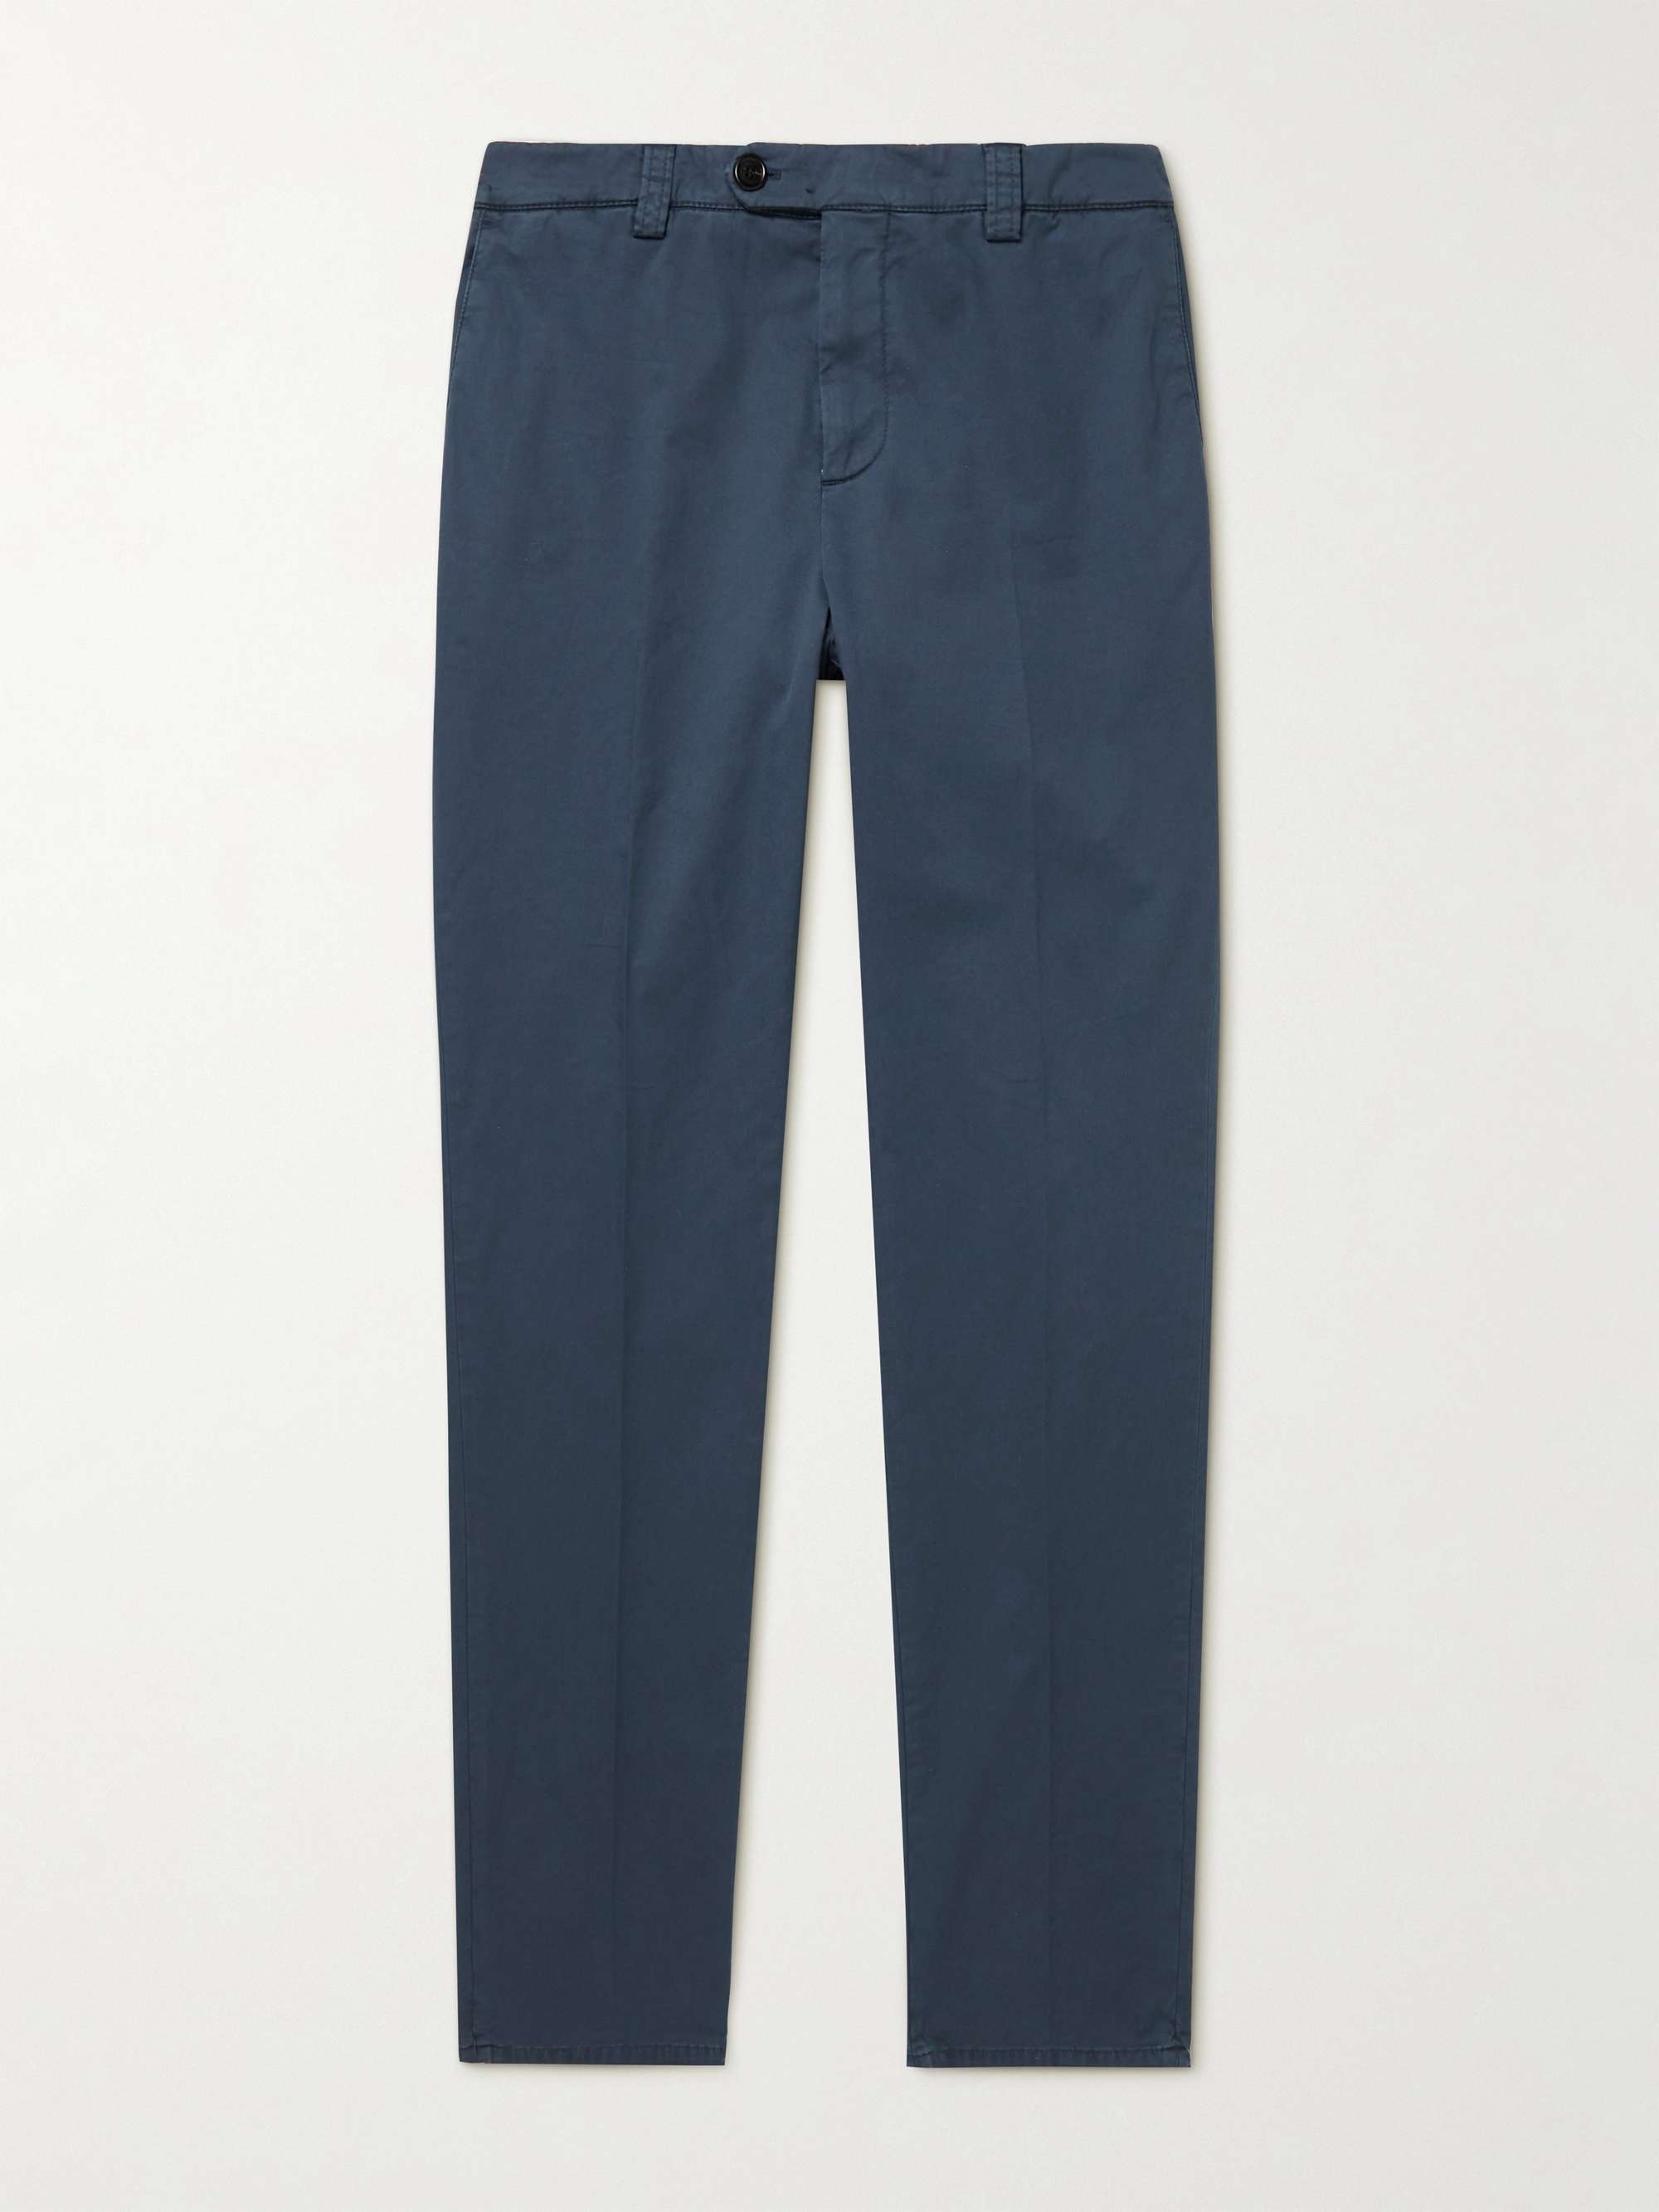 BRUNELLO CUCINELLI Blue Cotton Gabardine Pants Trousers Slim Fit 54 NEW 38 2017